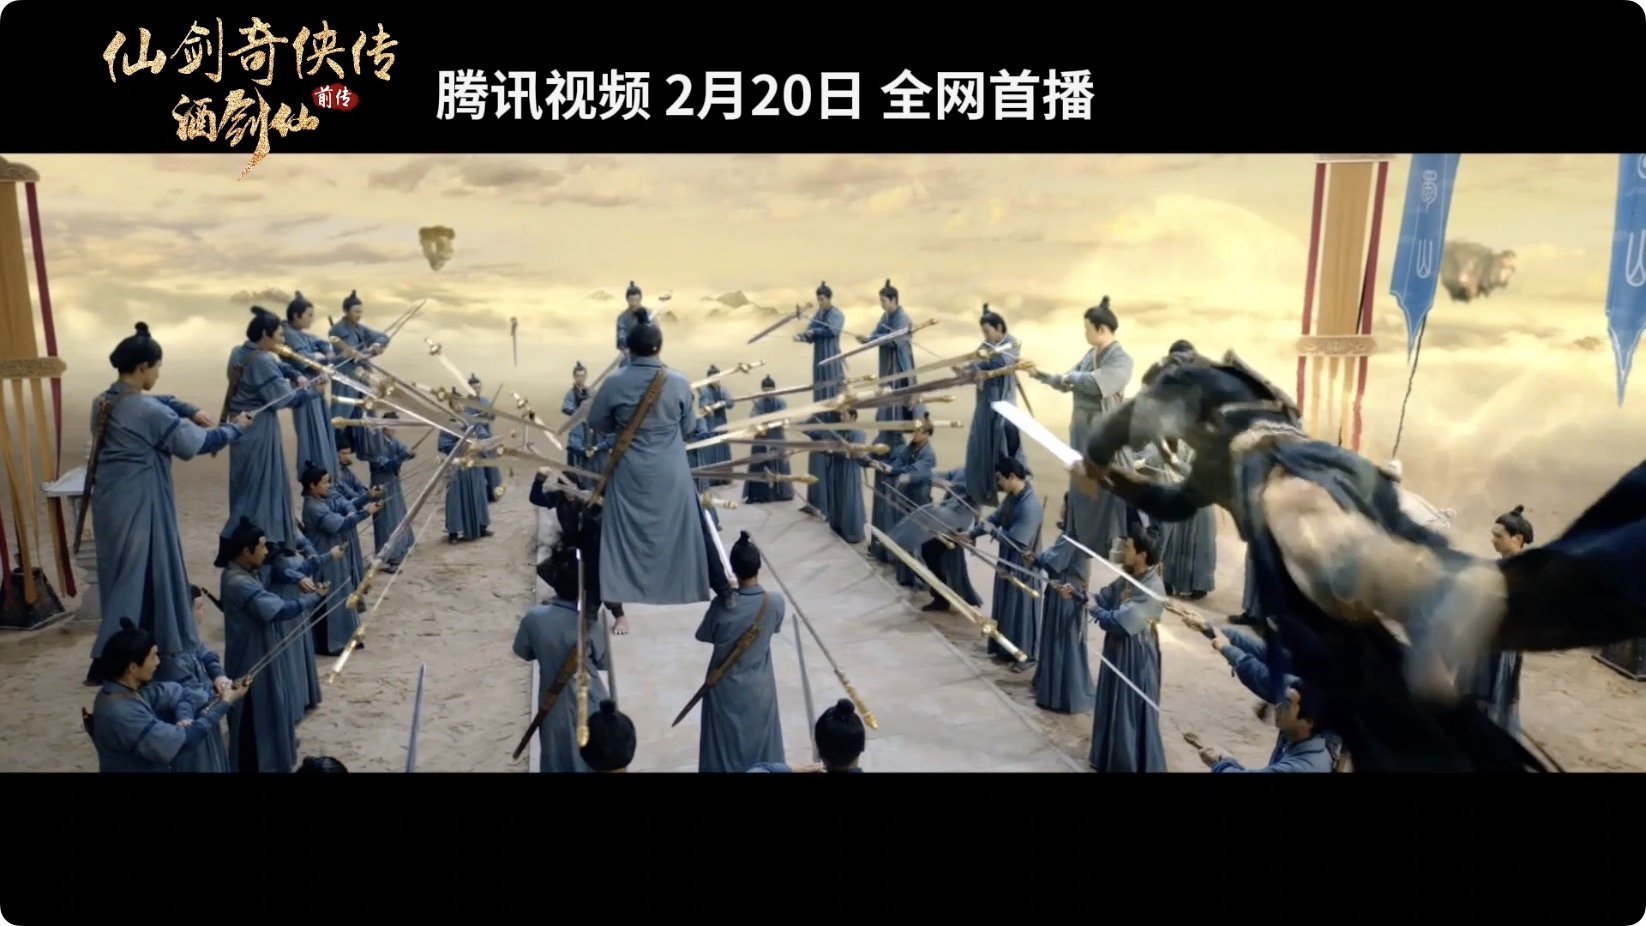 《仙剑》系列前传电影2.20上映 人与妖终极大战